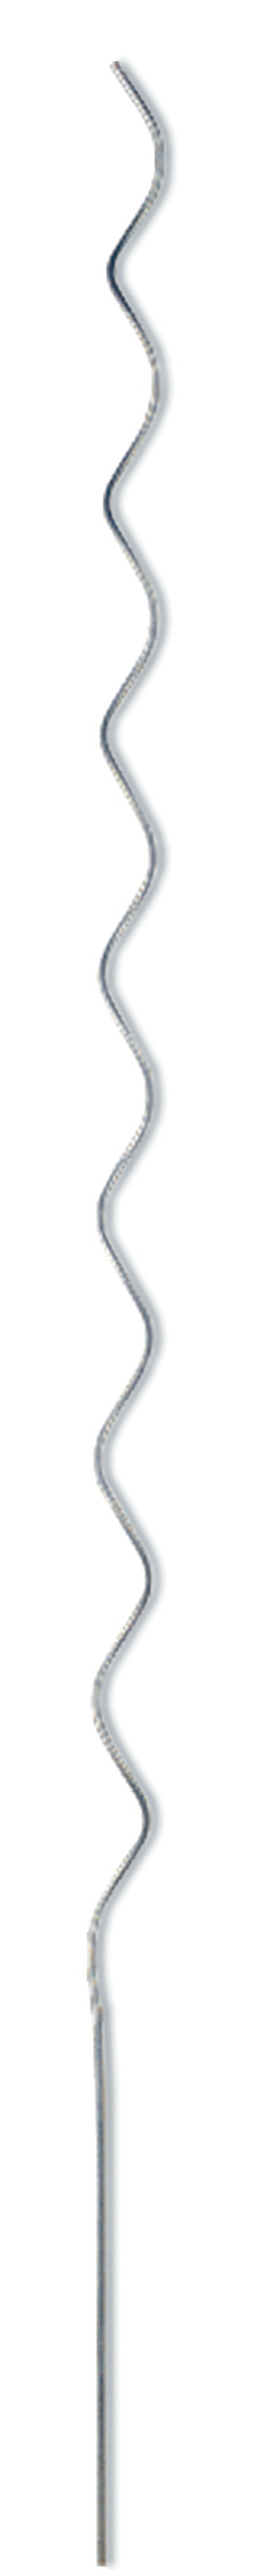 Talen Tools Tomatenspiraal metaal galvanise 200cm - 7 mm (per st.) - TOSPIR147200